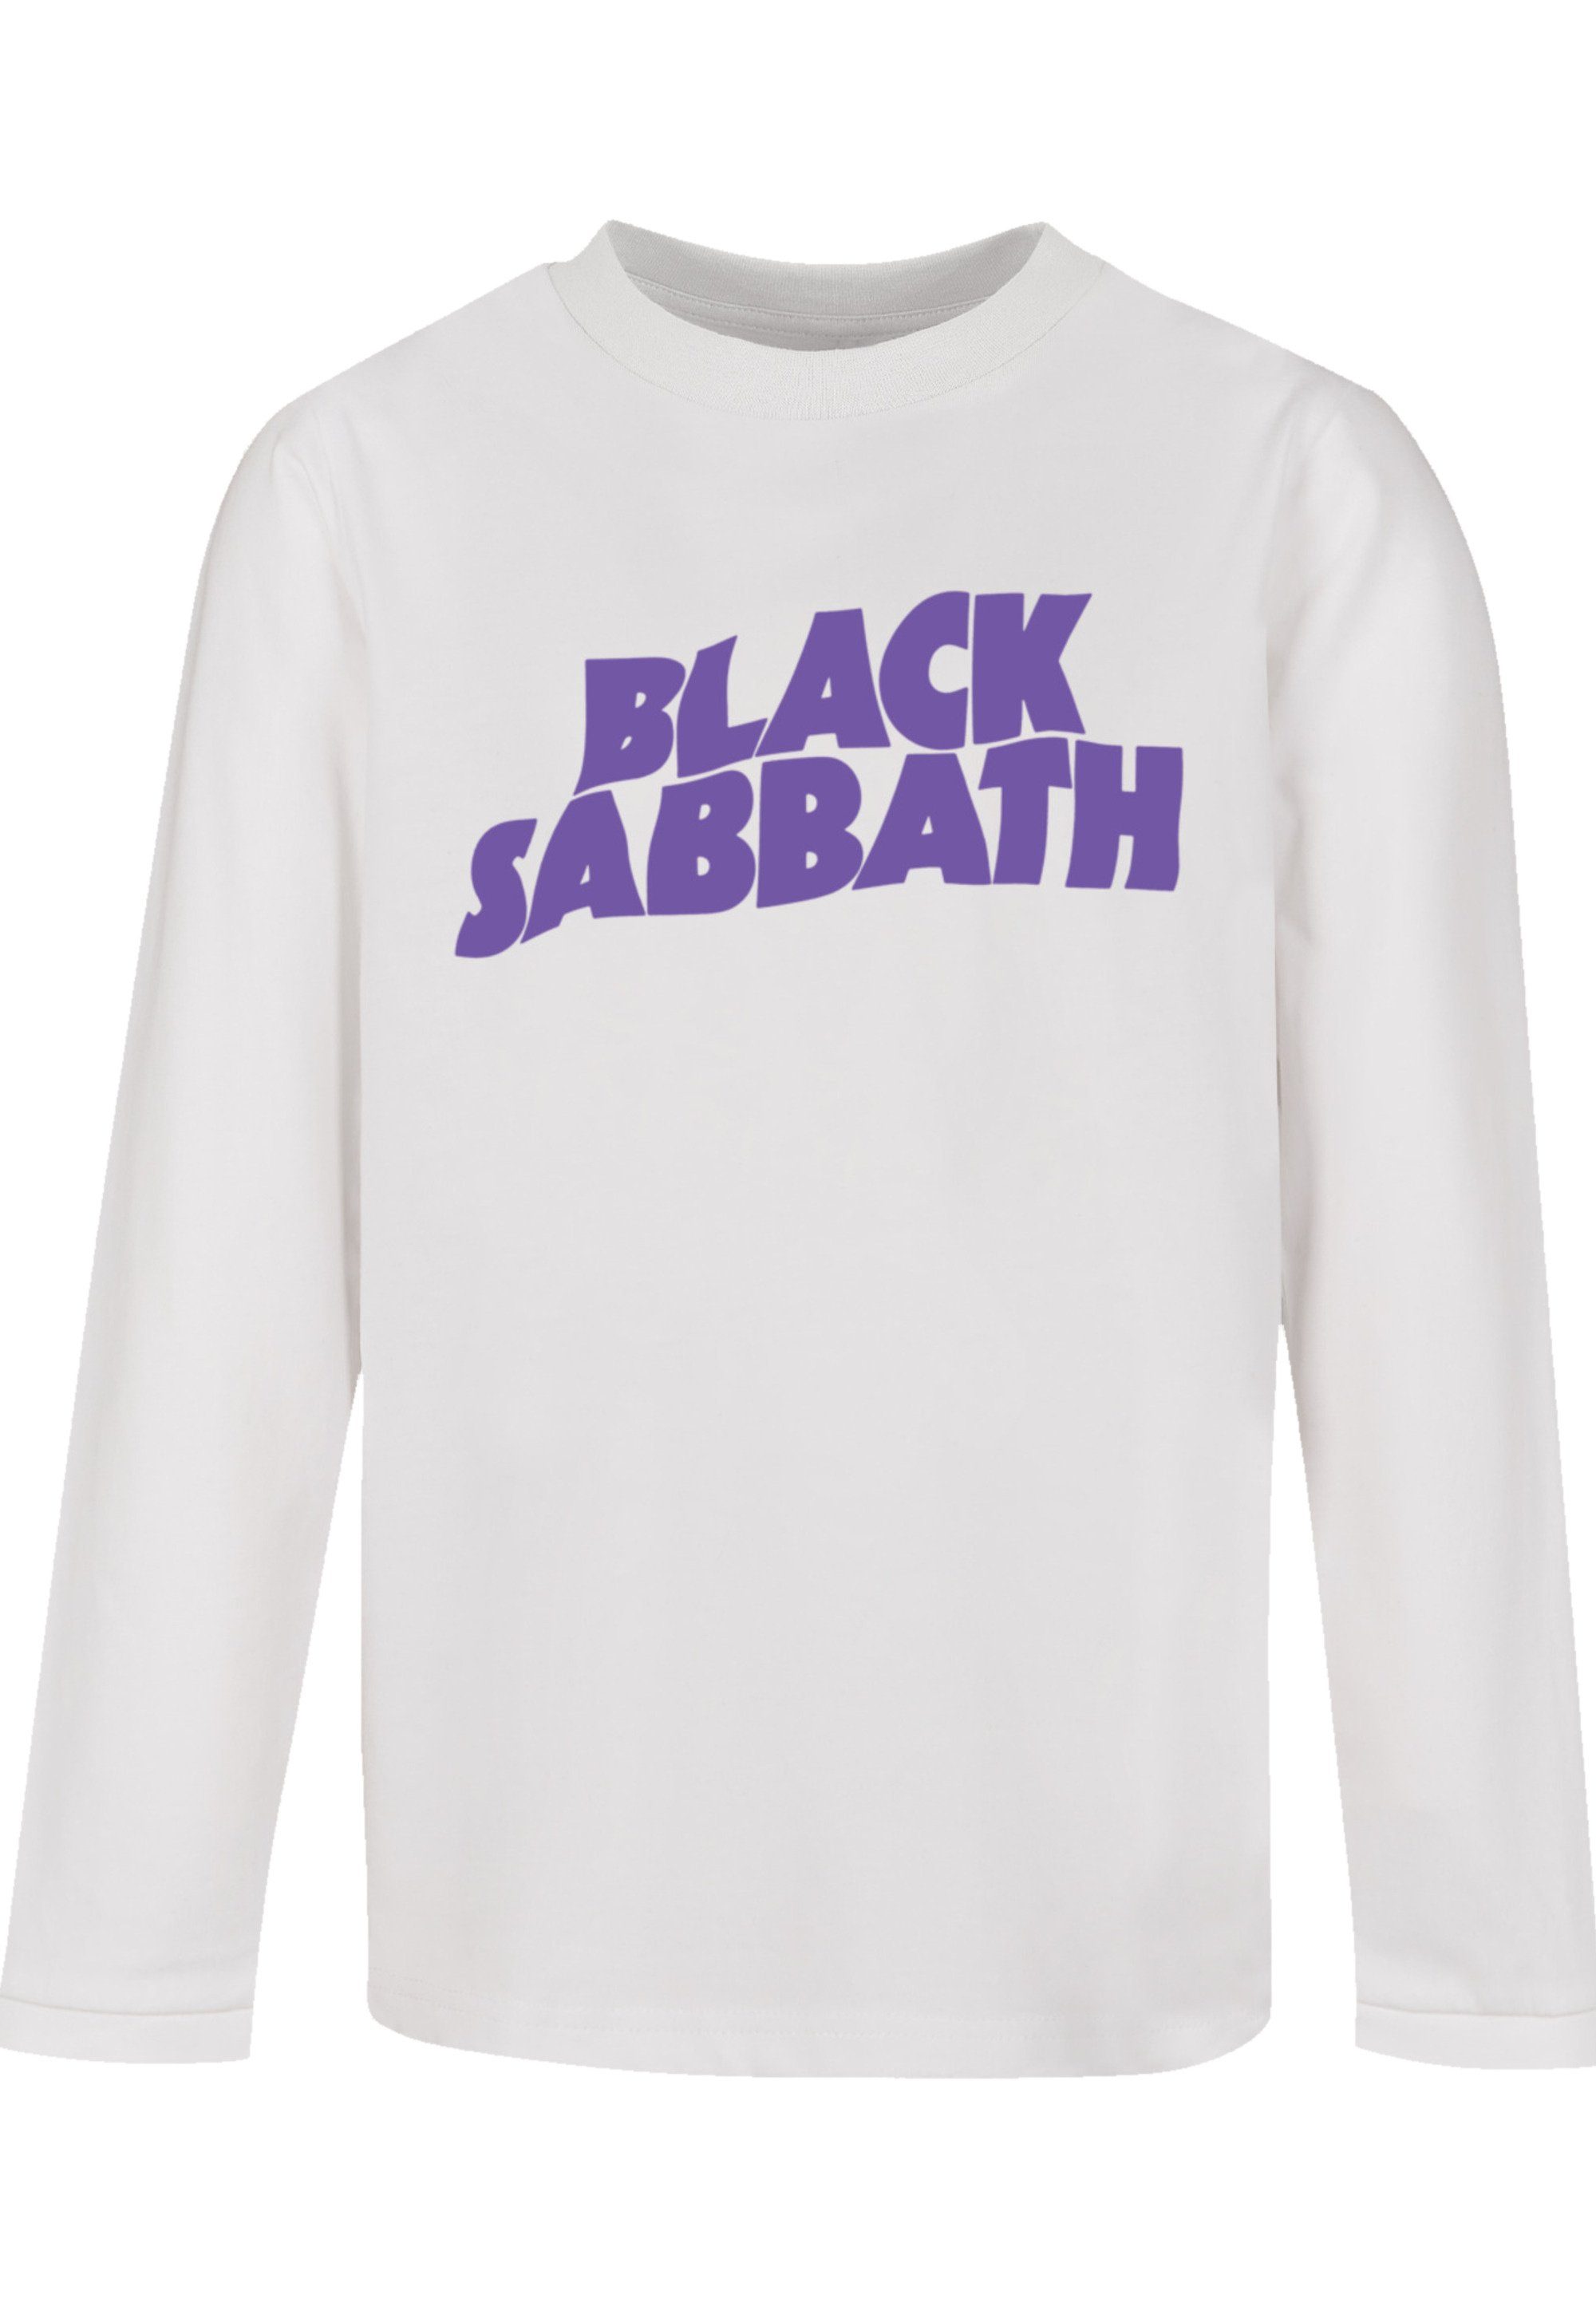 weicher F4NT4STIC Sehr Print, hohem mit Black Tragekomfort T-Shirt Wavy Sabbath Logo Black Baumwollstoff